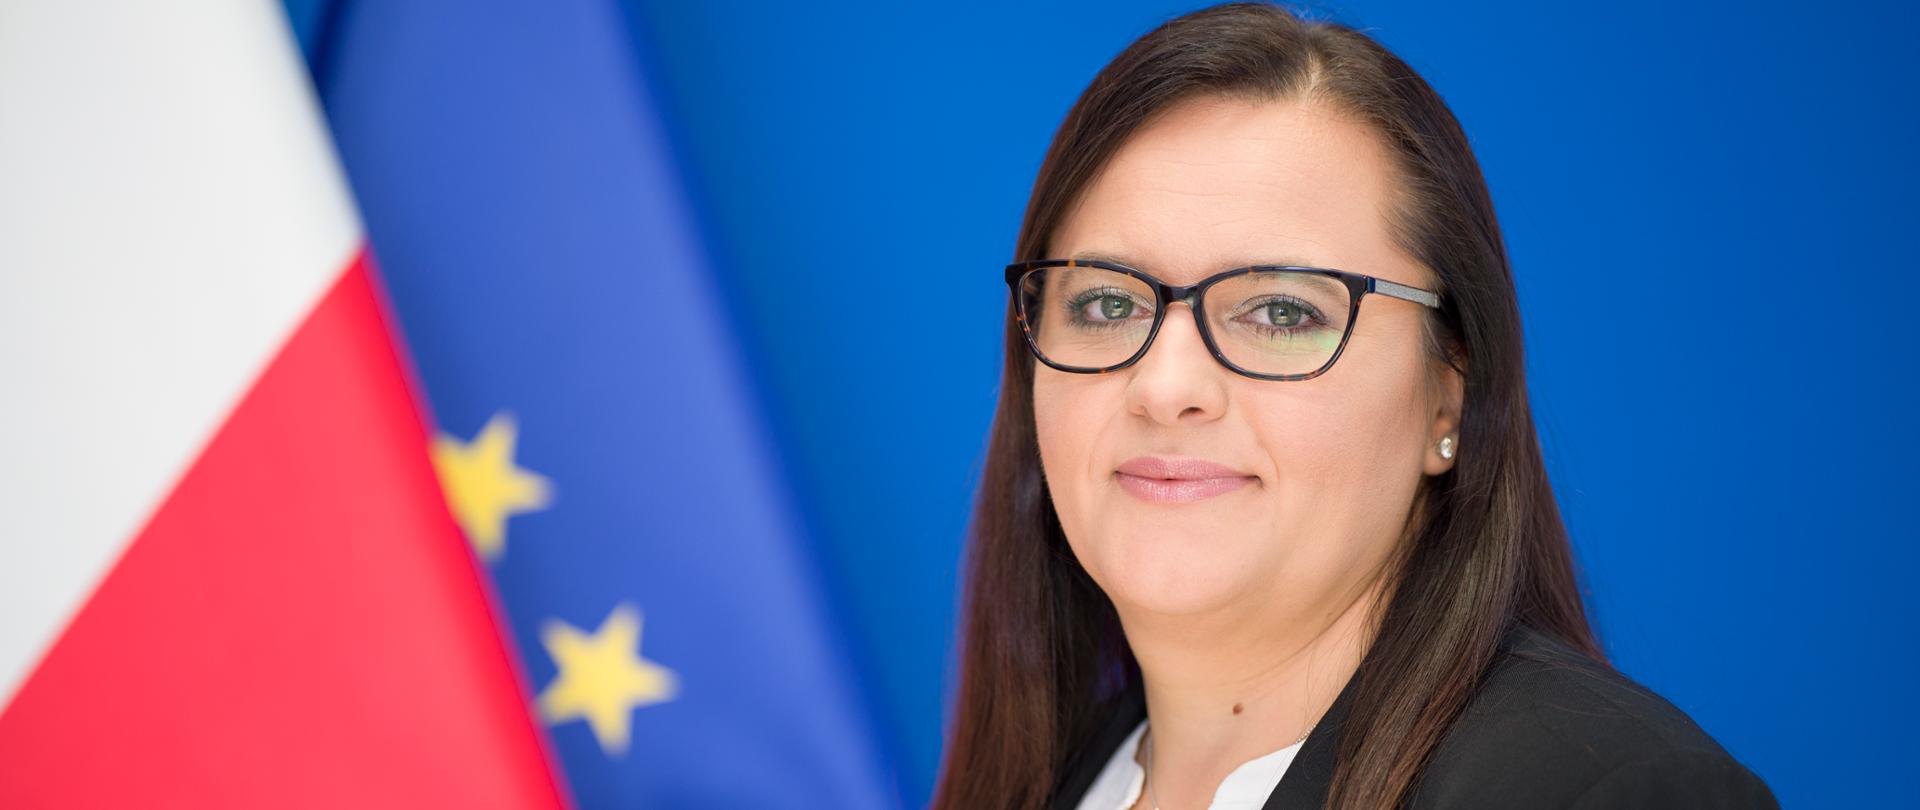 minister Małgorzata Jarosińska-Jedynak patrzy w stronę fotografującego, za nią flagi Polski i Unii Europejskiej